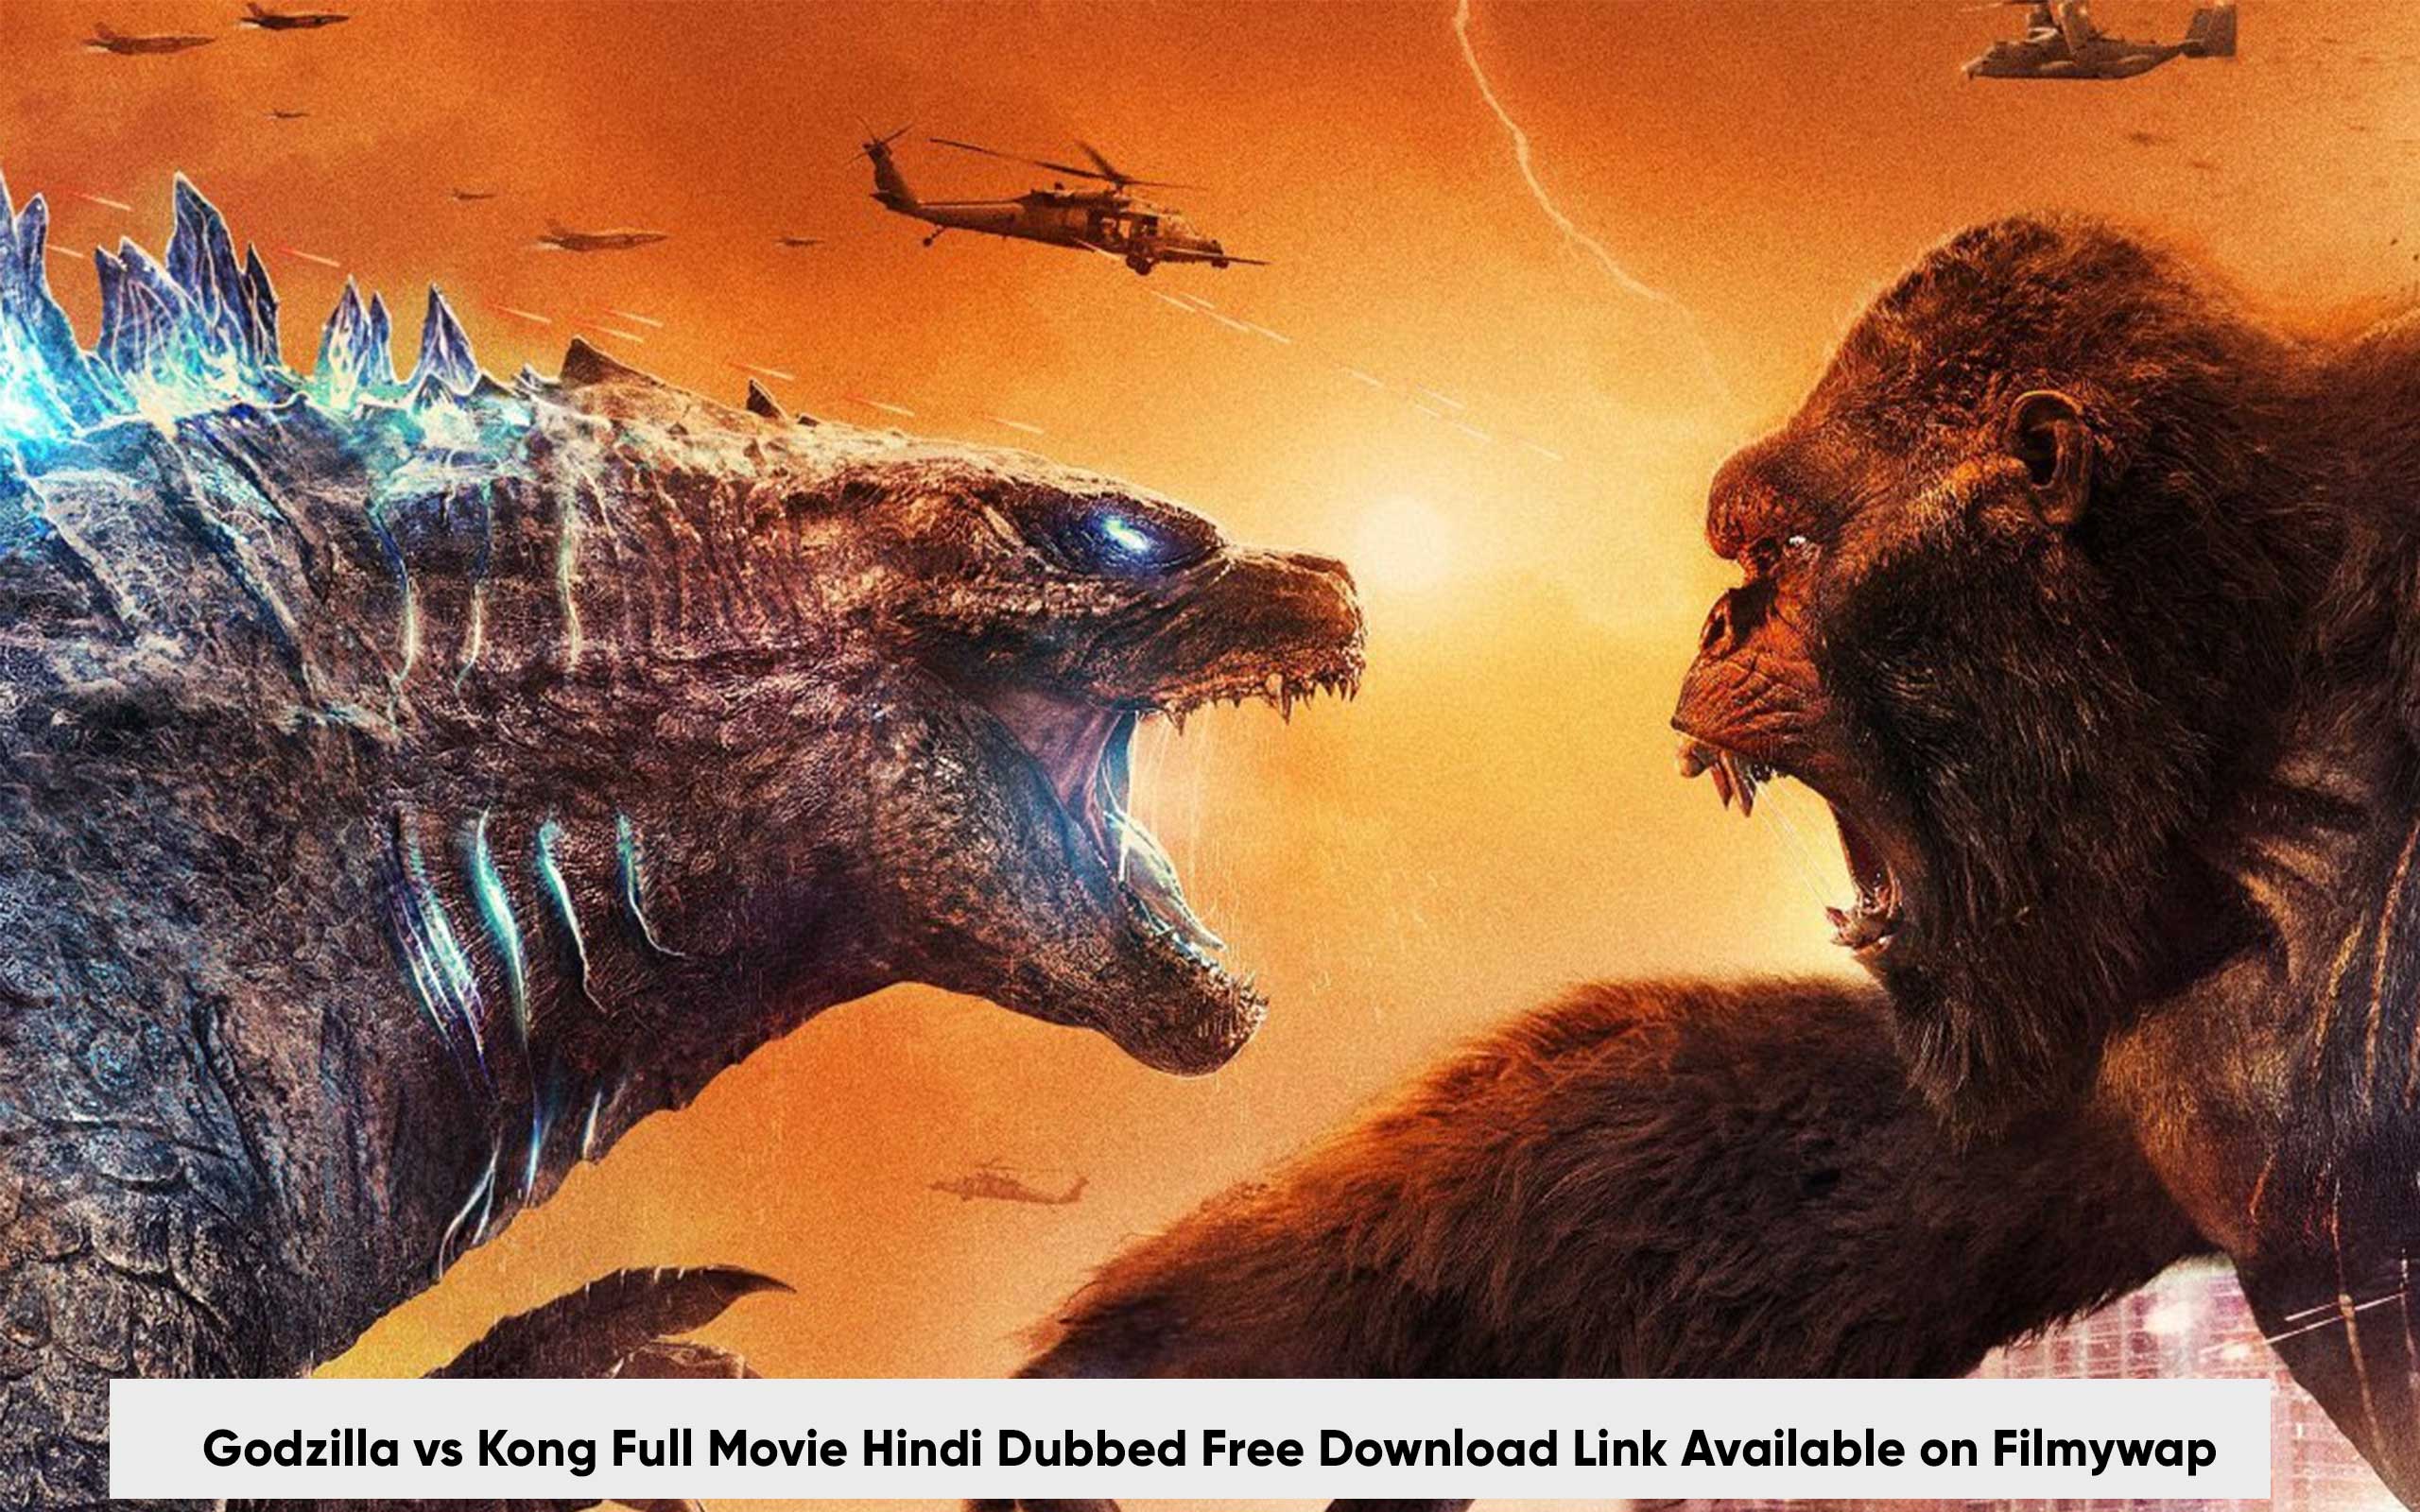 Godzilla vs Kong Full Movie Hindi Dubbed 1080P Free Download Link